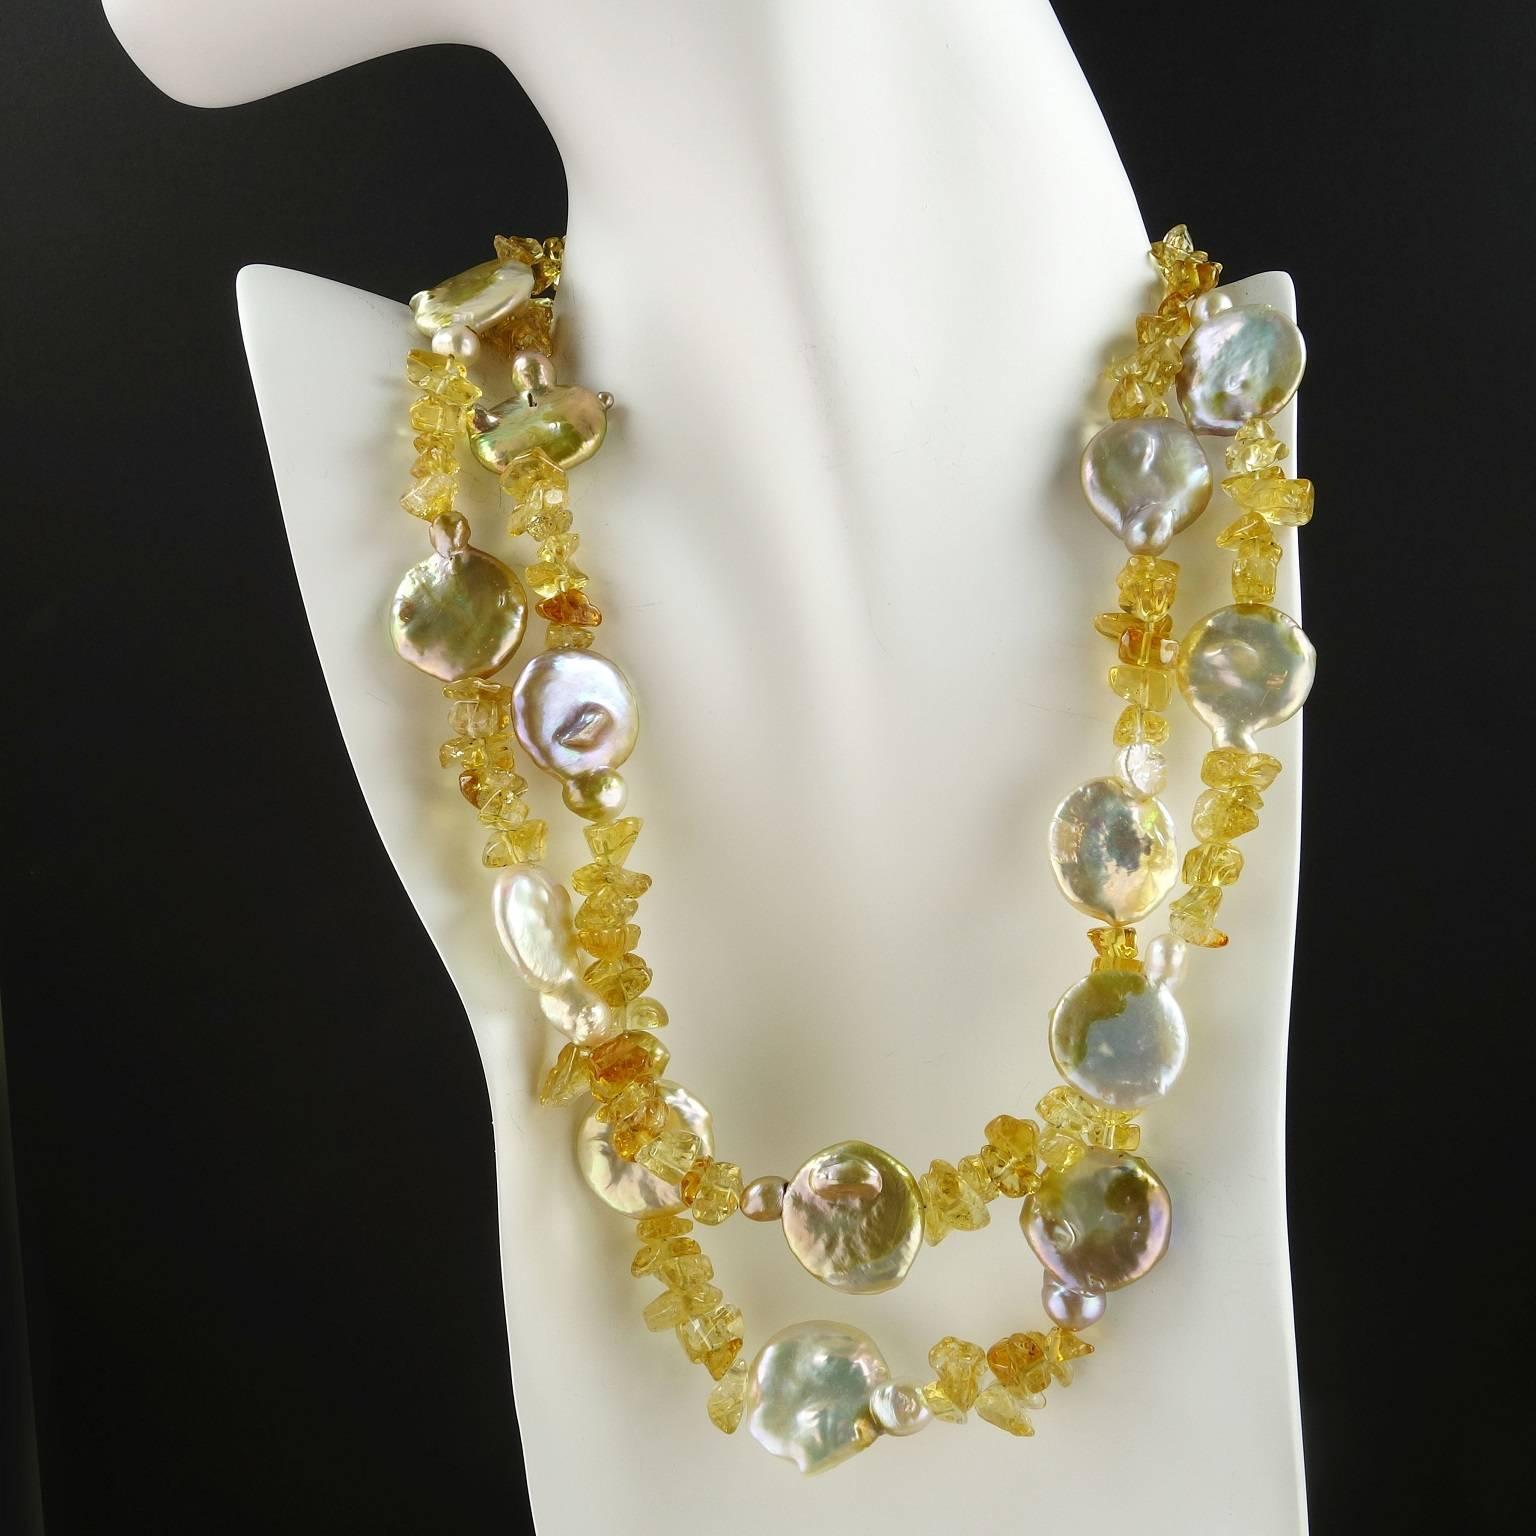 Zweisträngige irisierende Münzperlen- und polierte goldene Citrin-Chip-Halskette.  Diese reizende, feminine Halskette ist eine perfekte Kombination aus Münzperlen mit schillernden braunen, goldenen und malvenfarbenen Reflexen und einem getrommelten